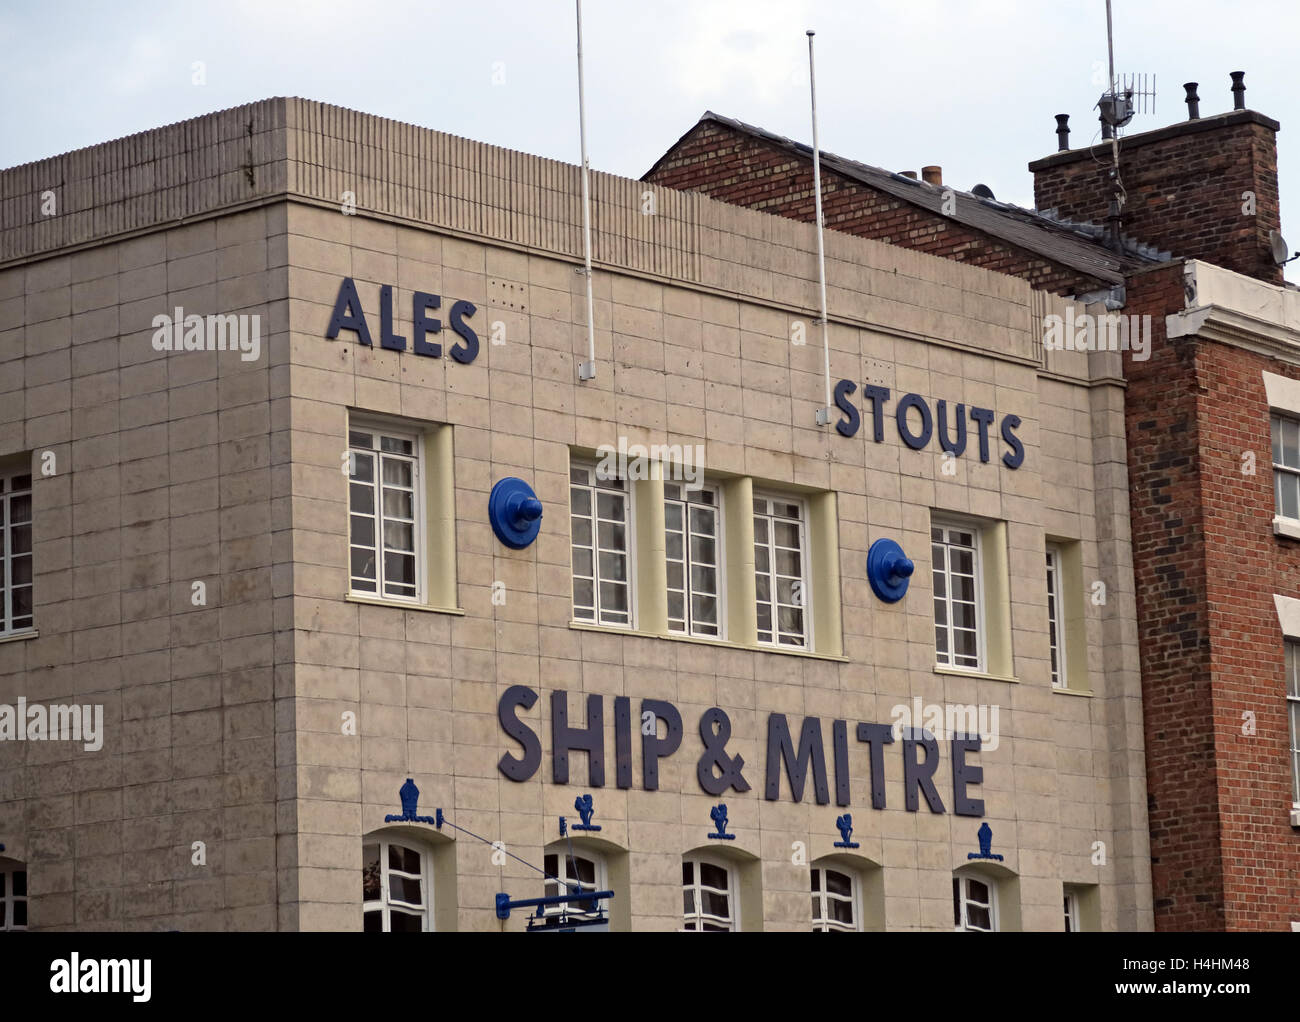 Ship & Mitre,pub,Ales, stouts Liverpool, Royaume-Uni Banque D'Images